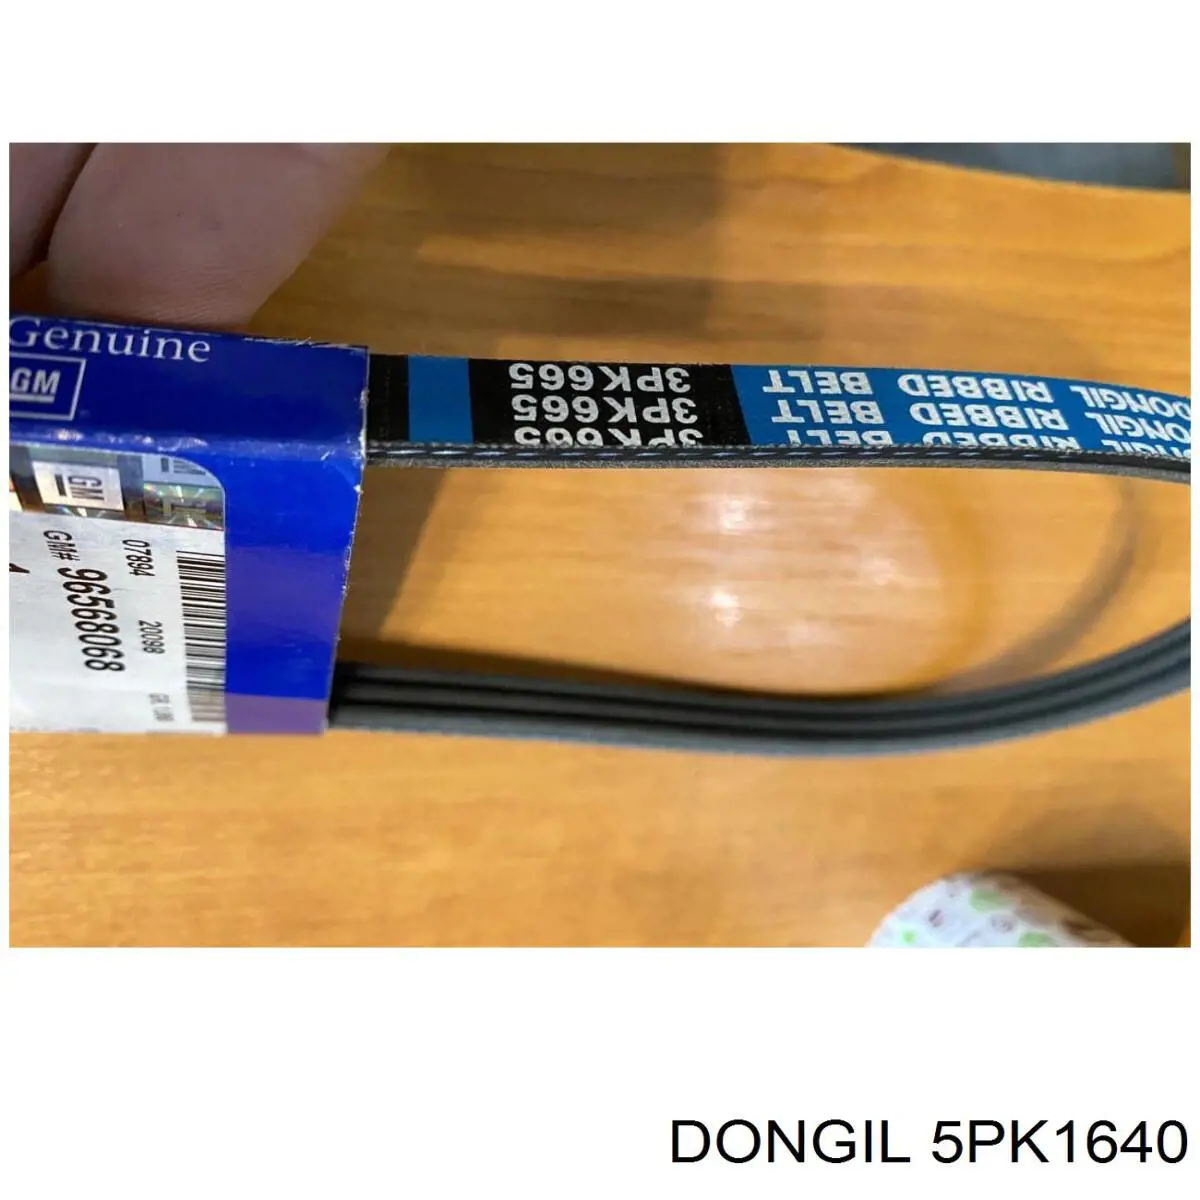 5PK1640 Dongil correa trapezoidal